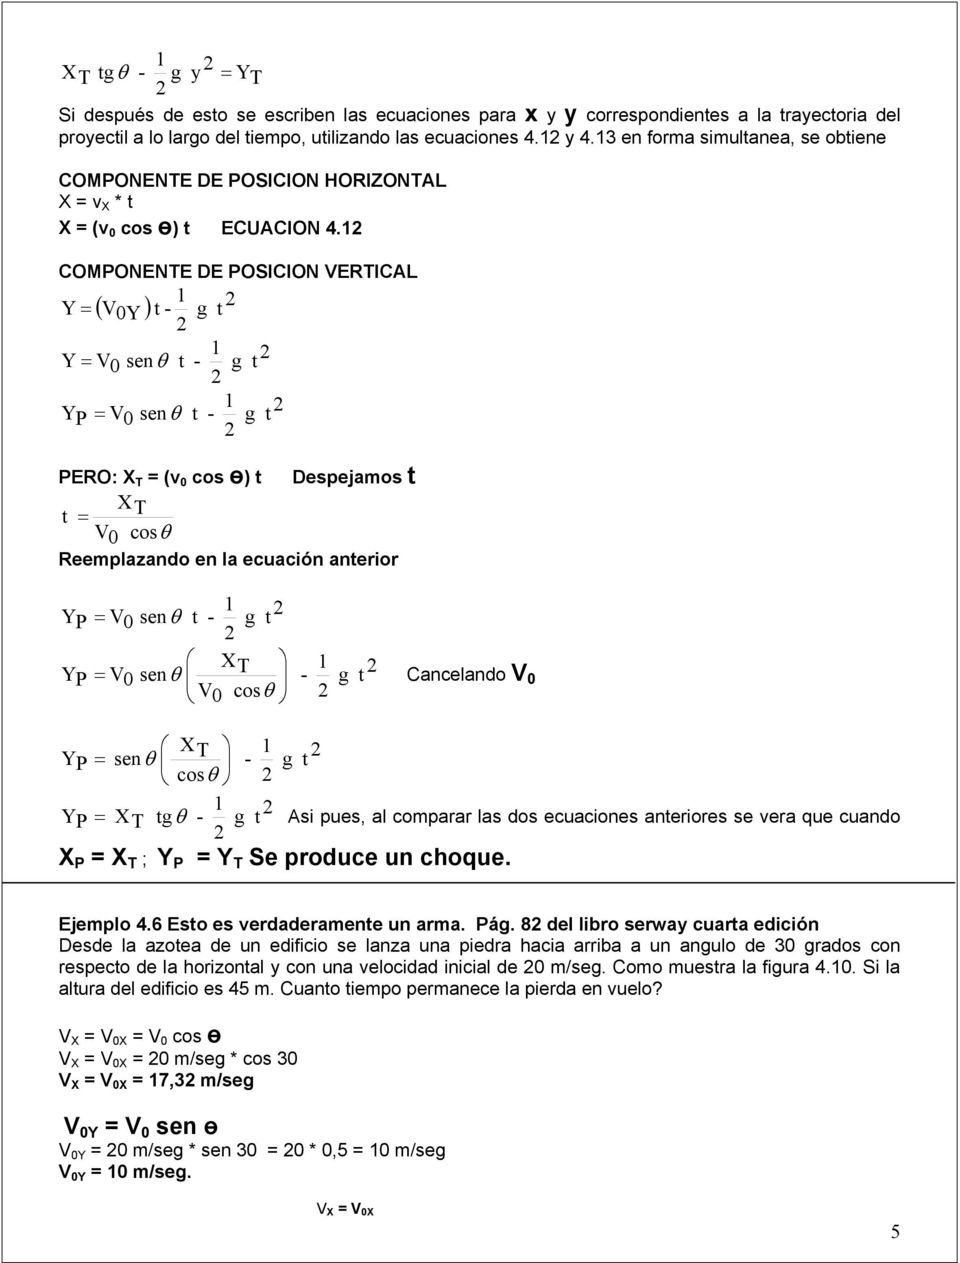 1 COMPONENTE DE POSICION ERTICAL 1 Y ( ) - 0Y 1 Y sen - 0 θ YP 1 0 sen θ - PERO: X T (v 0 cos ө) Despejamos XT 0 cosθ Reemplazando en la ecuación anerior YP YP 0 sen θ - 1 XT 1 sen - 0 θ 0 cos